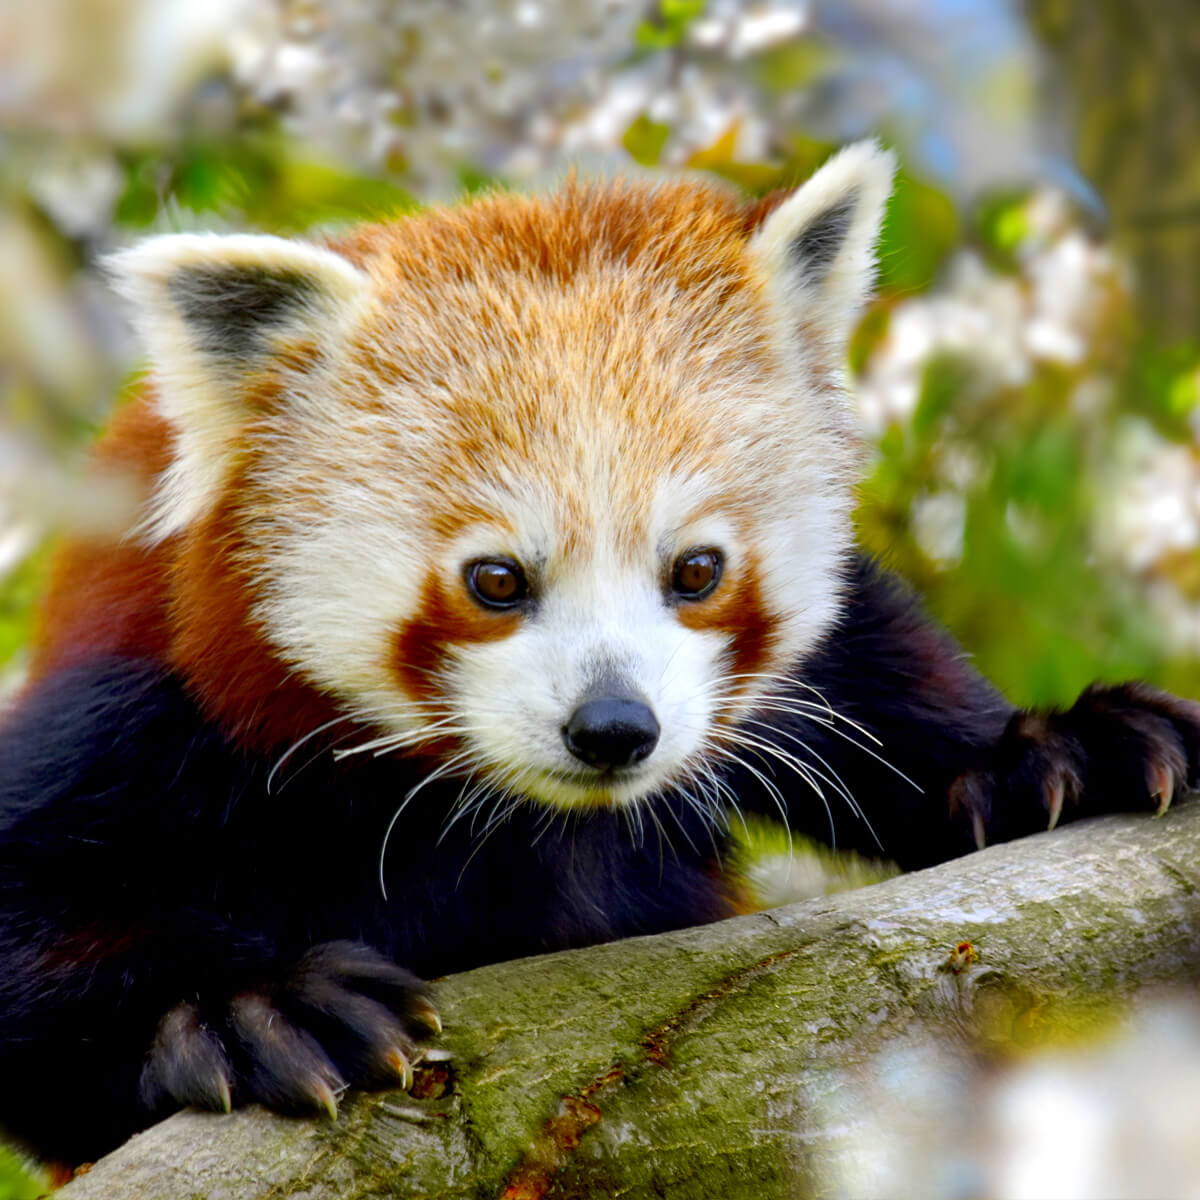 Redding nooit Gepensioneerde Rode panda - GaiaZOO